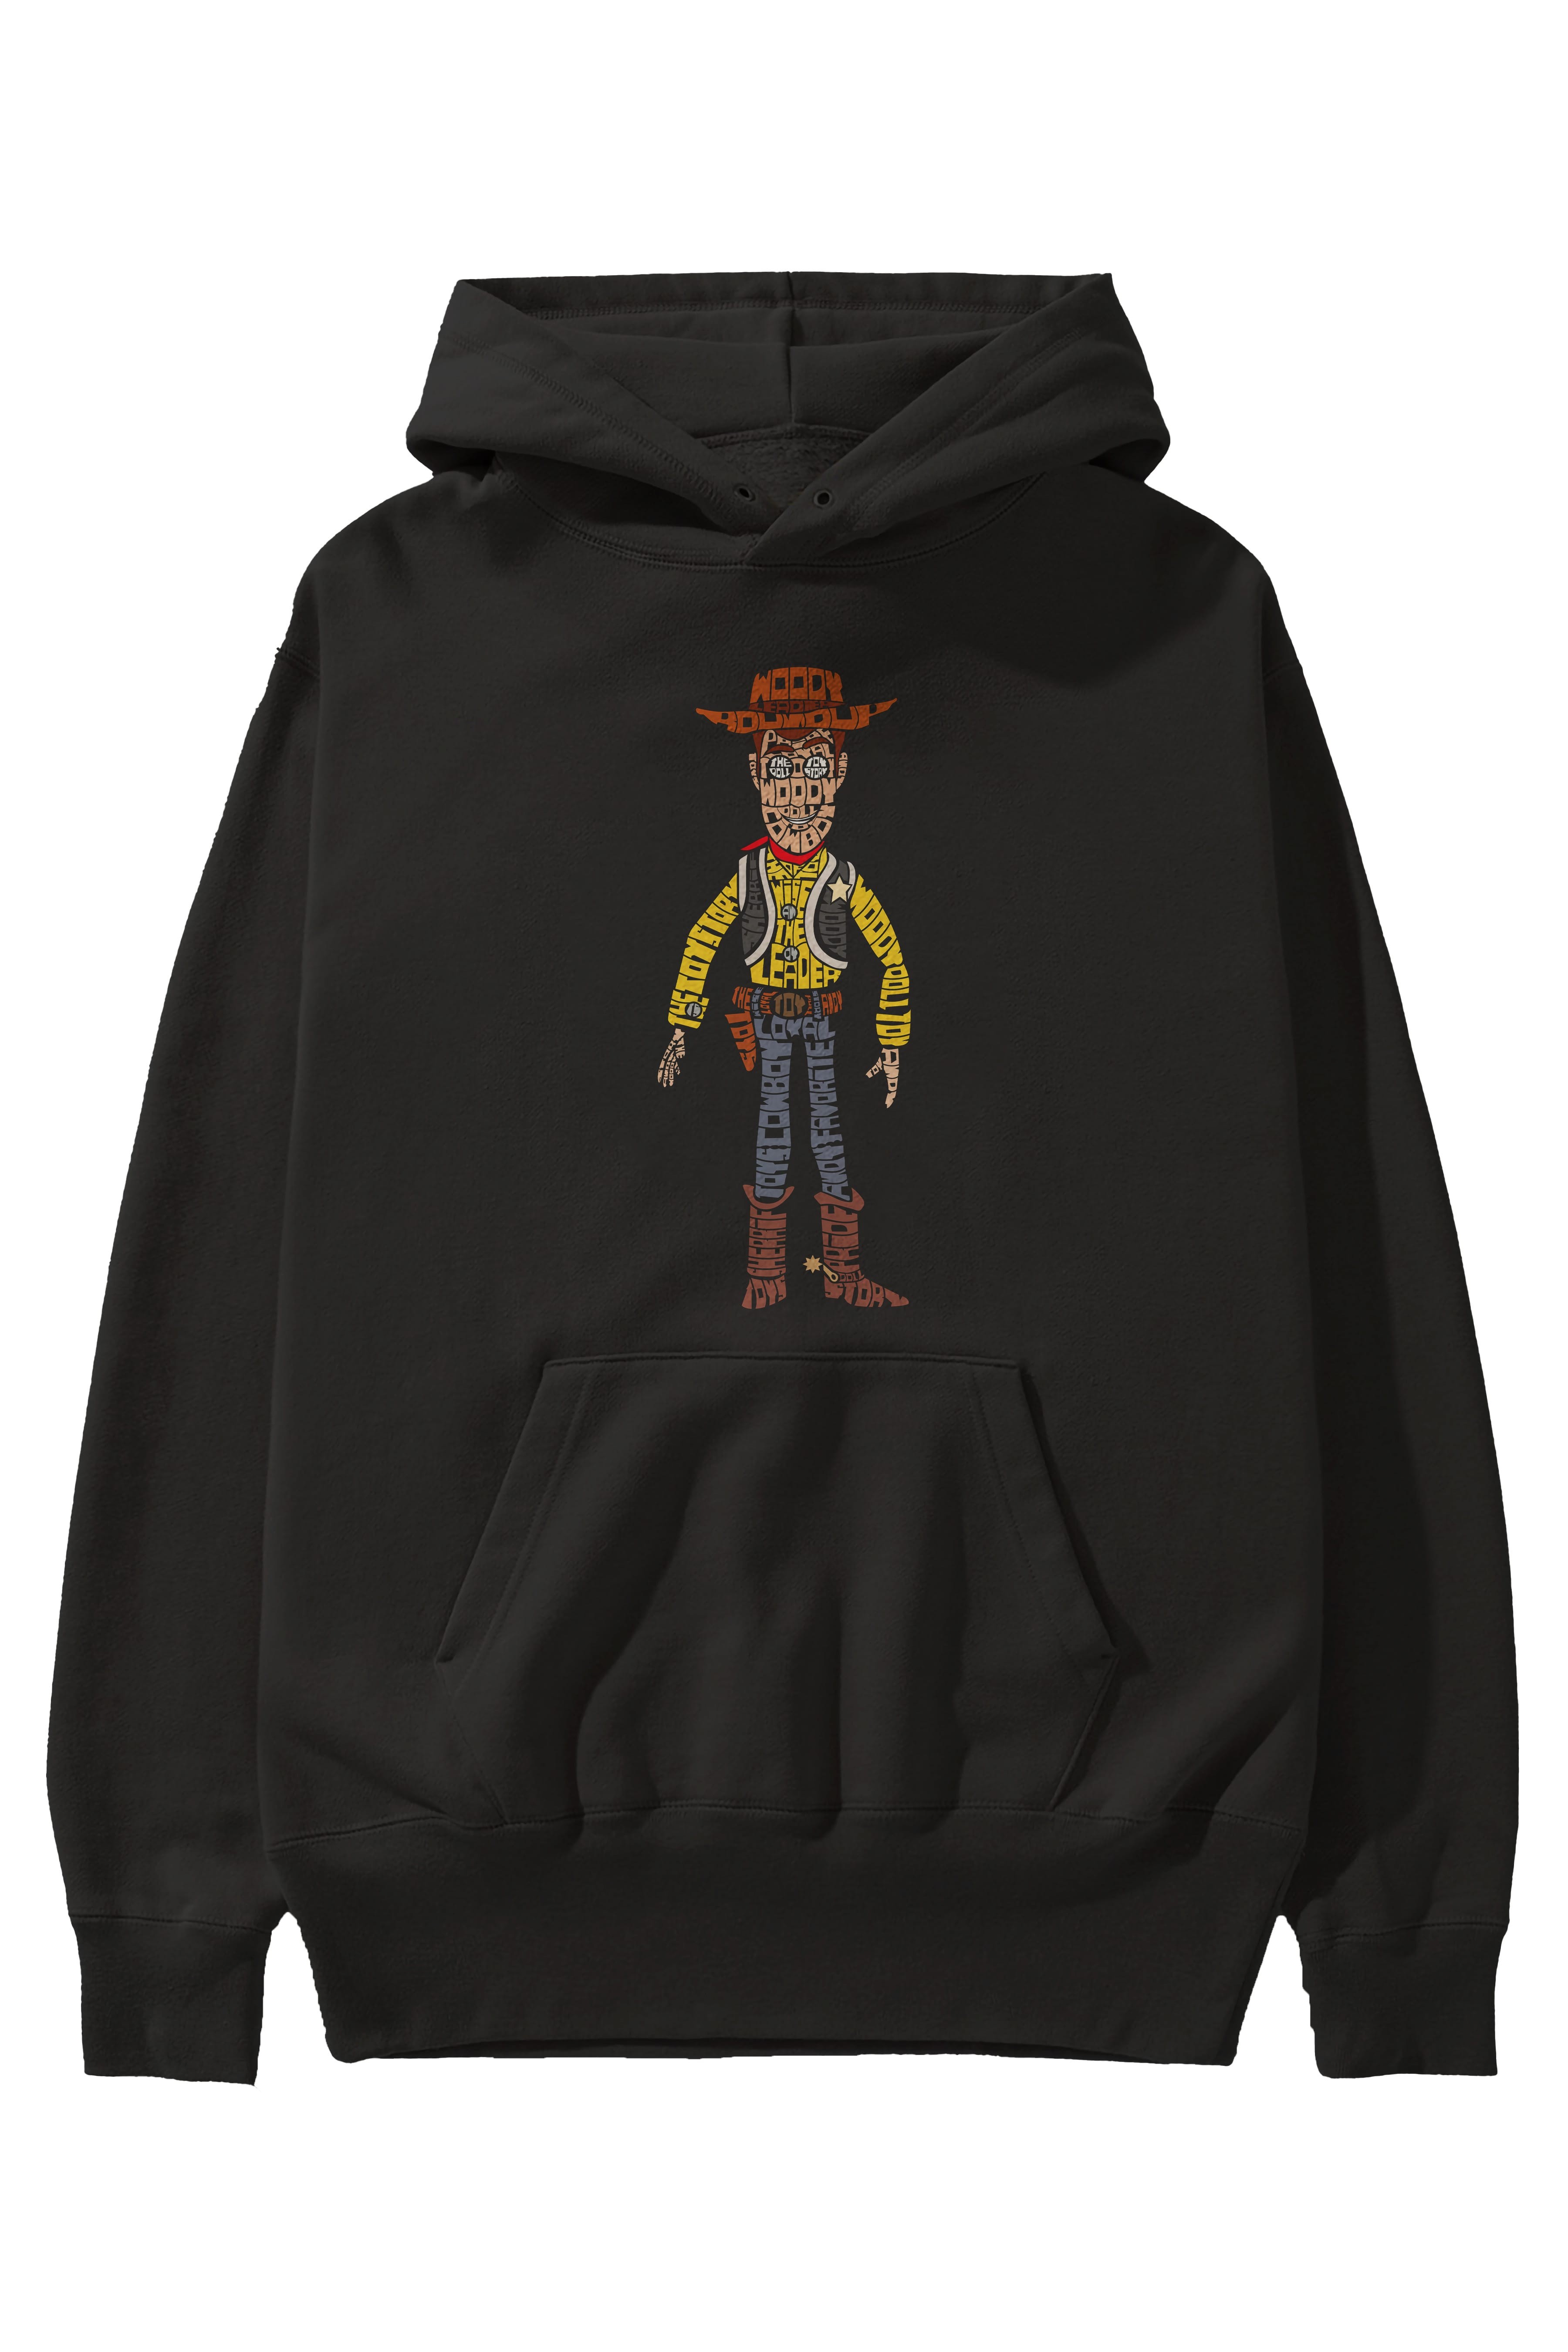 Woody Ön Baskılı Hoodie Oversize Kapüşonlu Sweatshirt Erkek Kadın Unisex